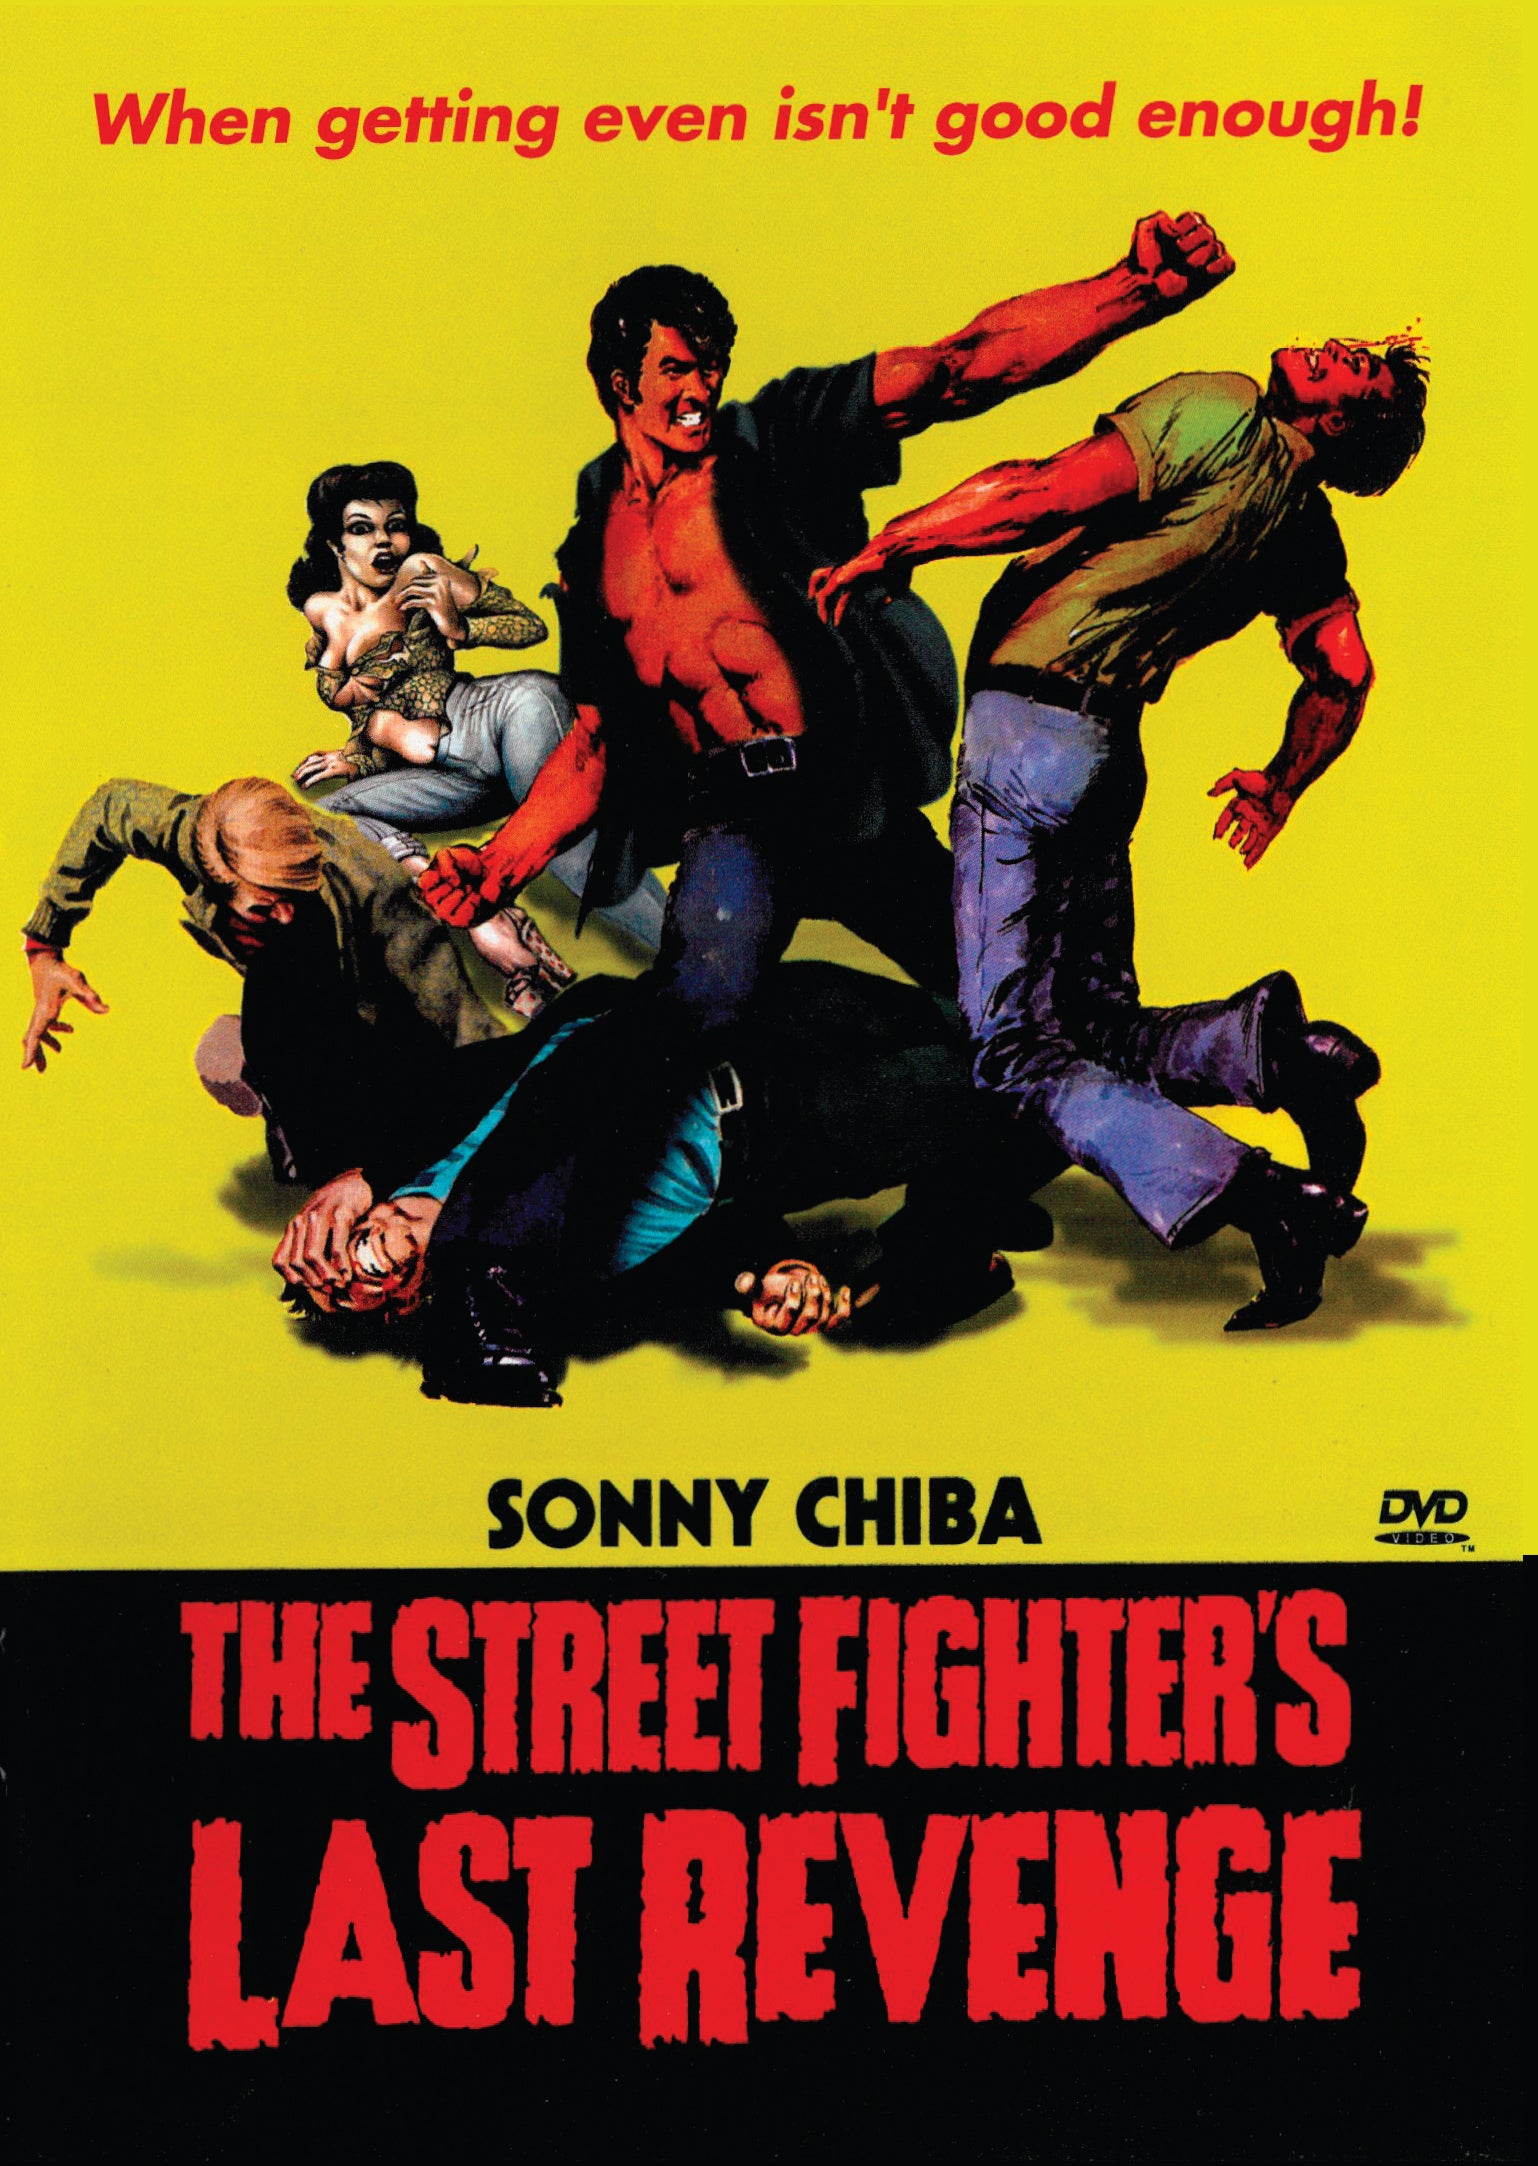 THE STREET FIGHTER'S LAST REVENGE DVD